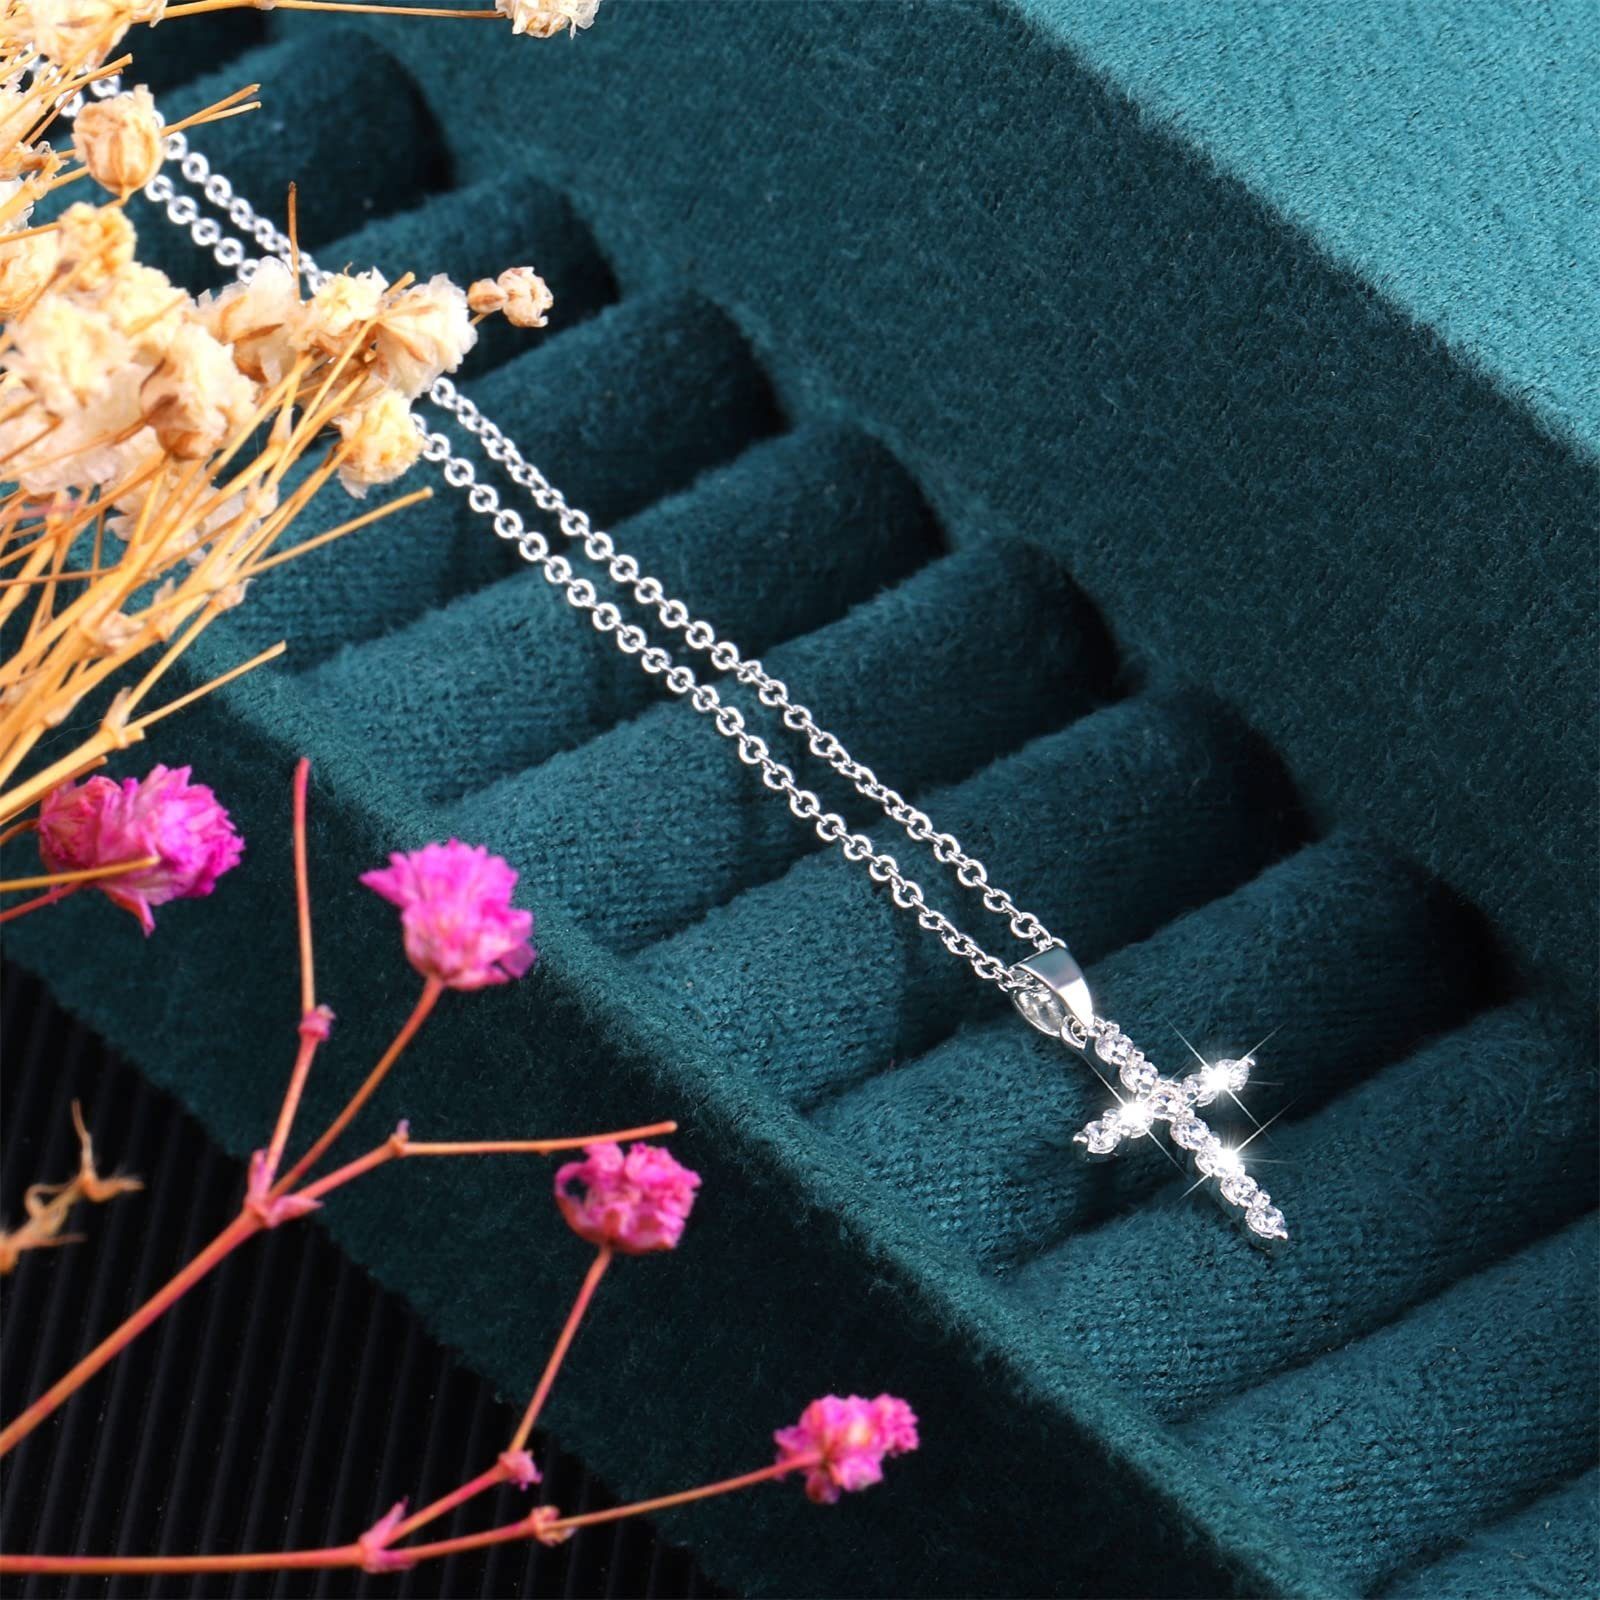 POCHUMIDUU Lange Kette Kreuzkette Silver für Zirkoniakette Kreuz mit Girls, Frauen